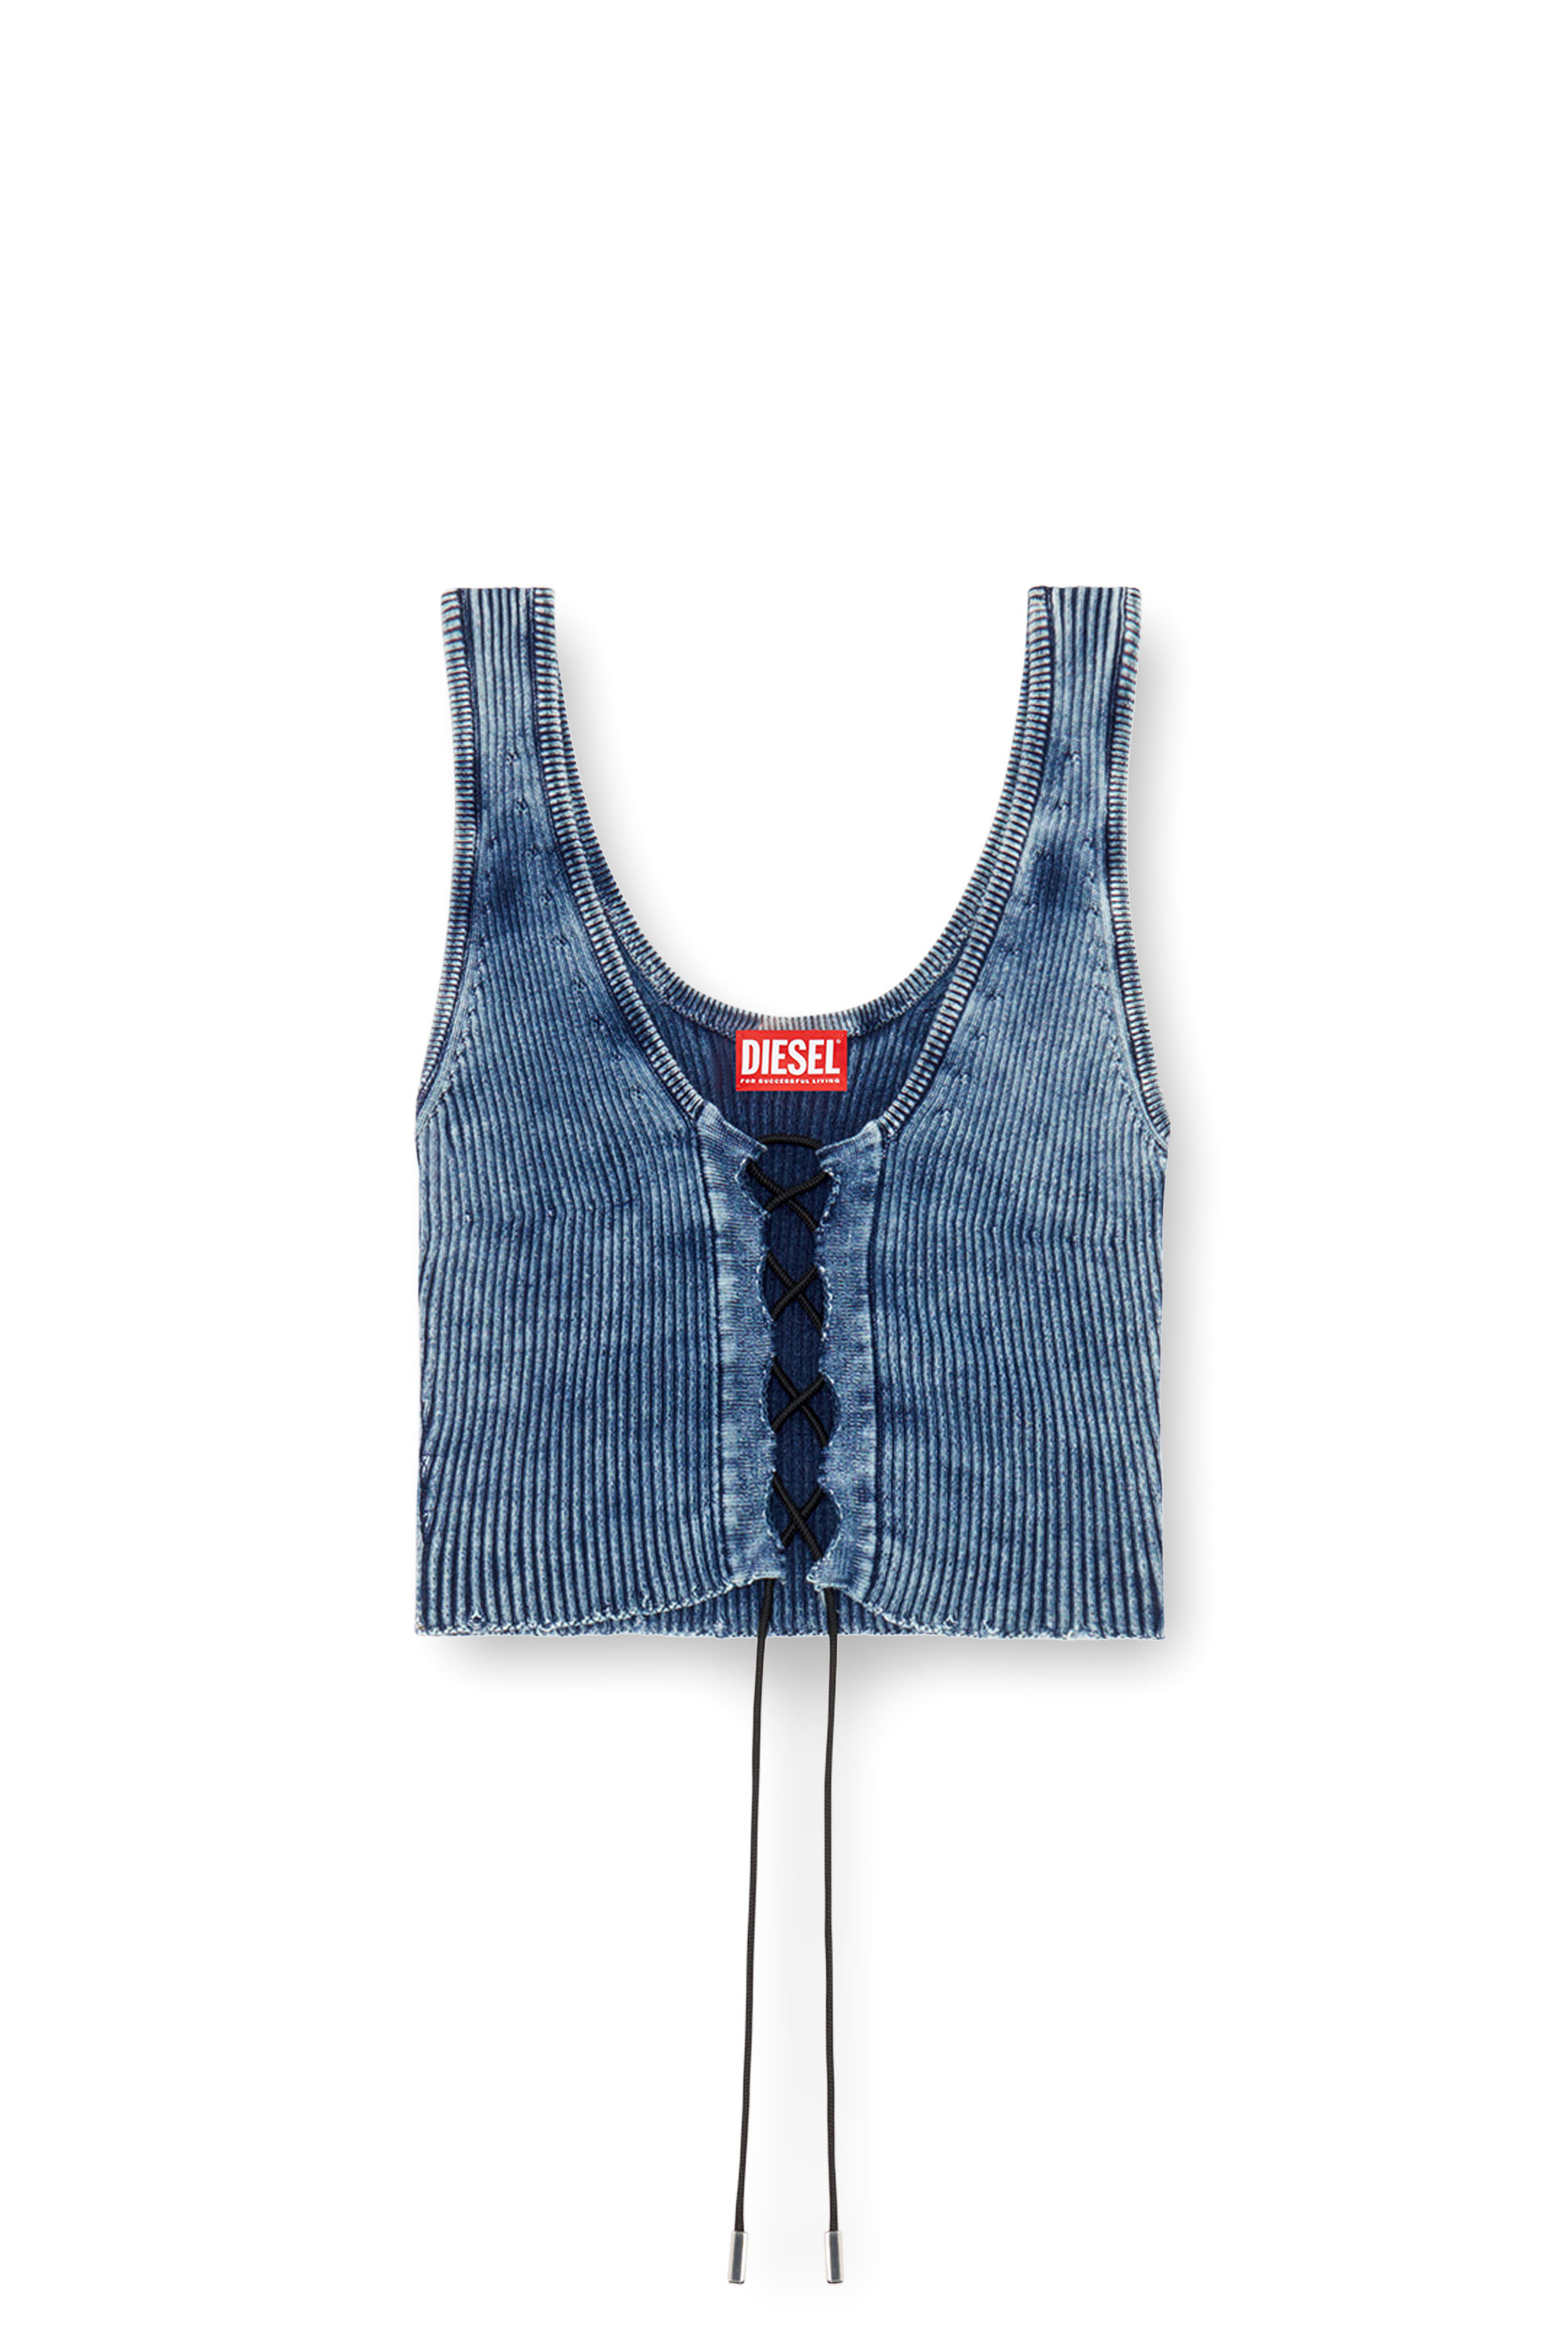 Diesel - M-ADONE, Mujer Camiseta sin mangas recortada con cordones en tejido índigo in Azul marino - Image 3